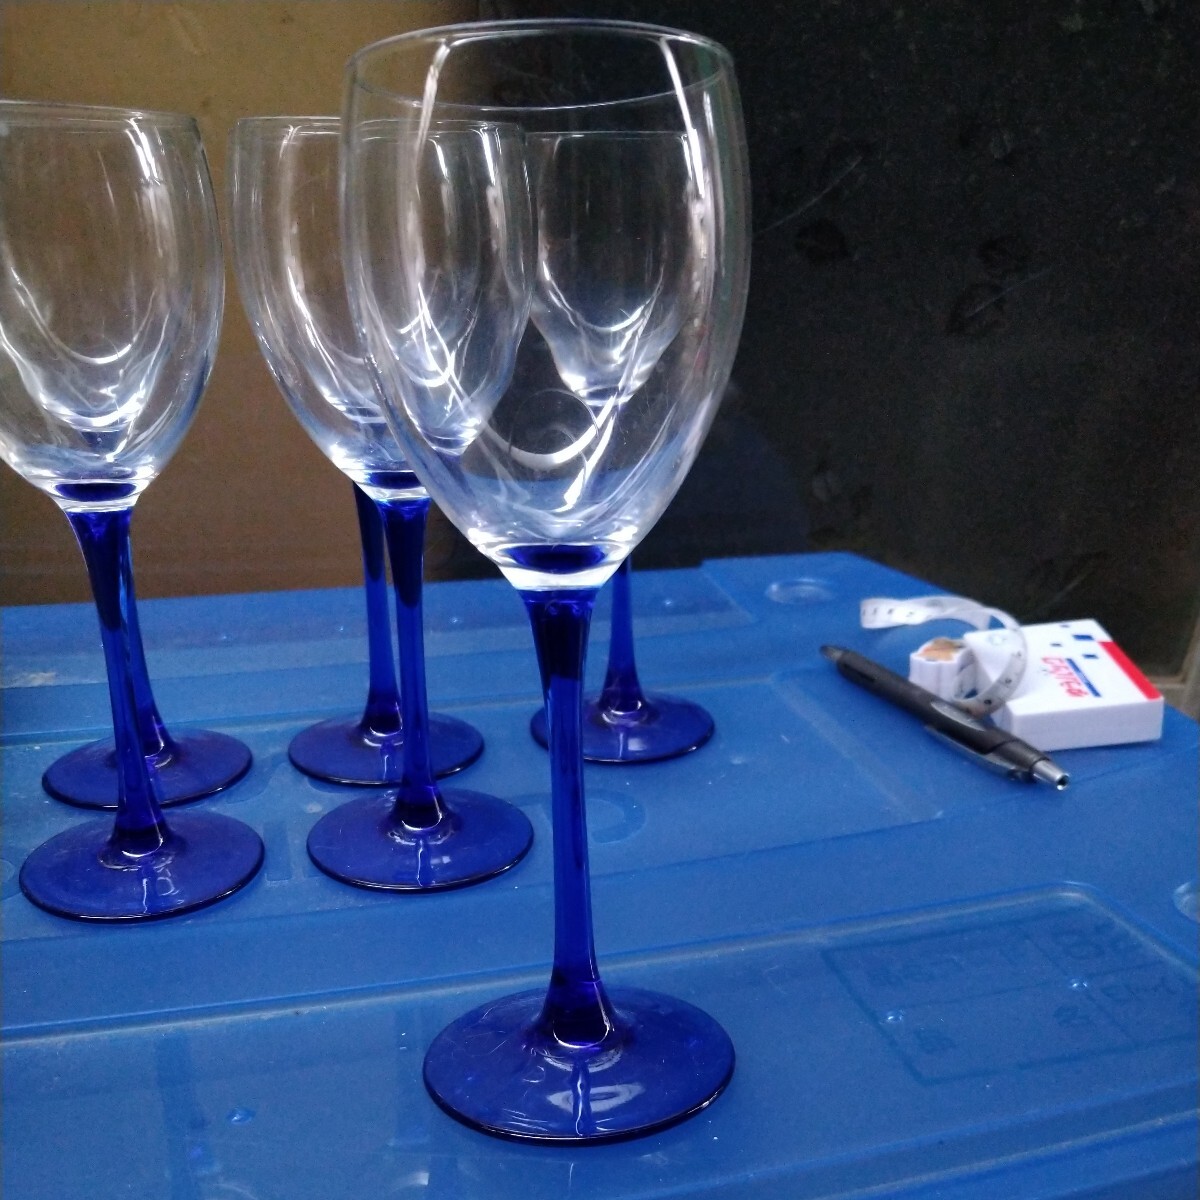  бокал для вина стеклянный держать рука голубой шесть шт. комплект склад регулировка товар почти не использовался 